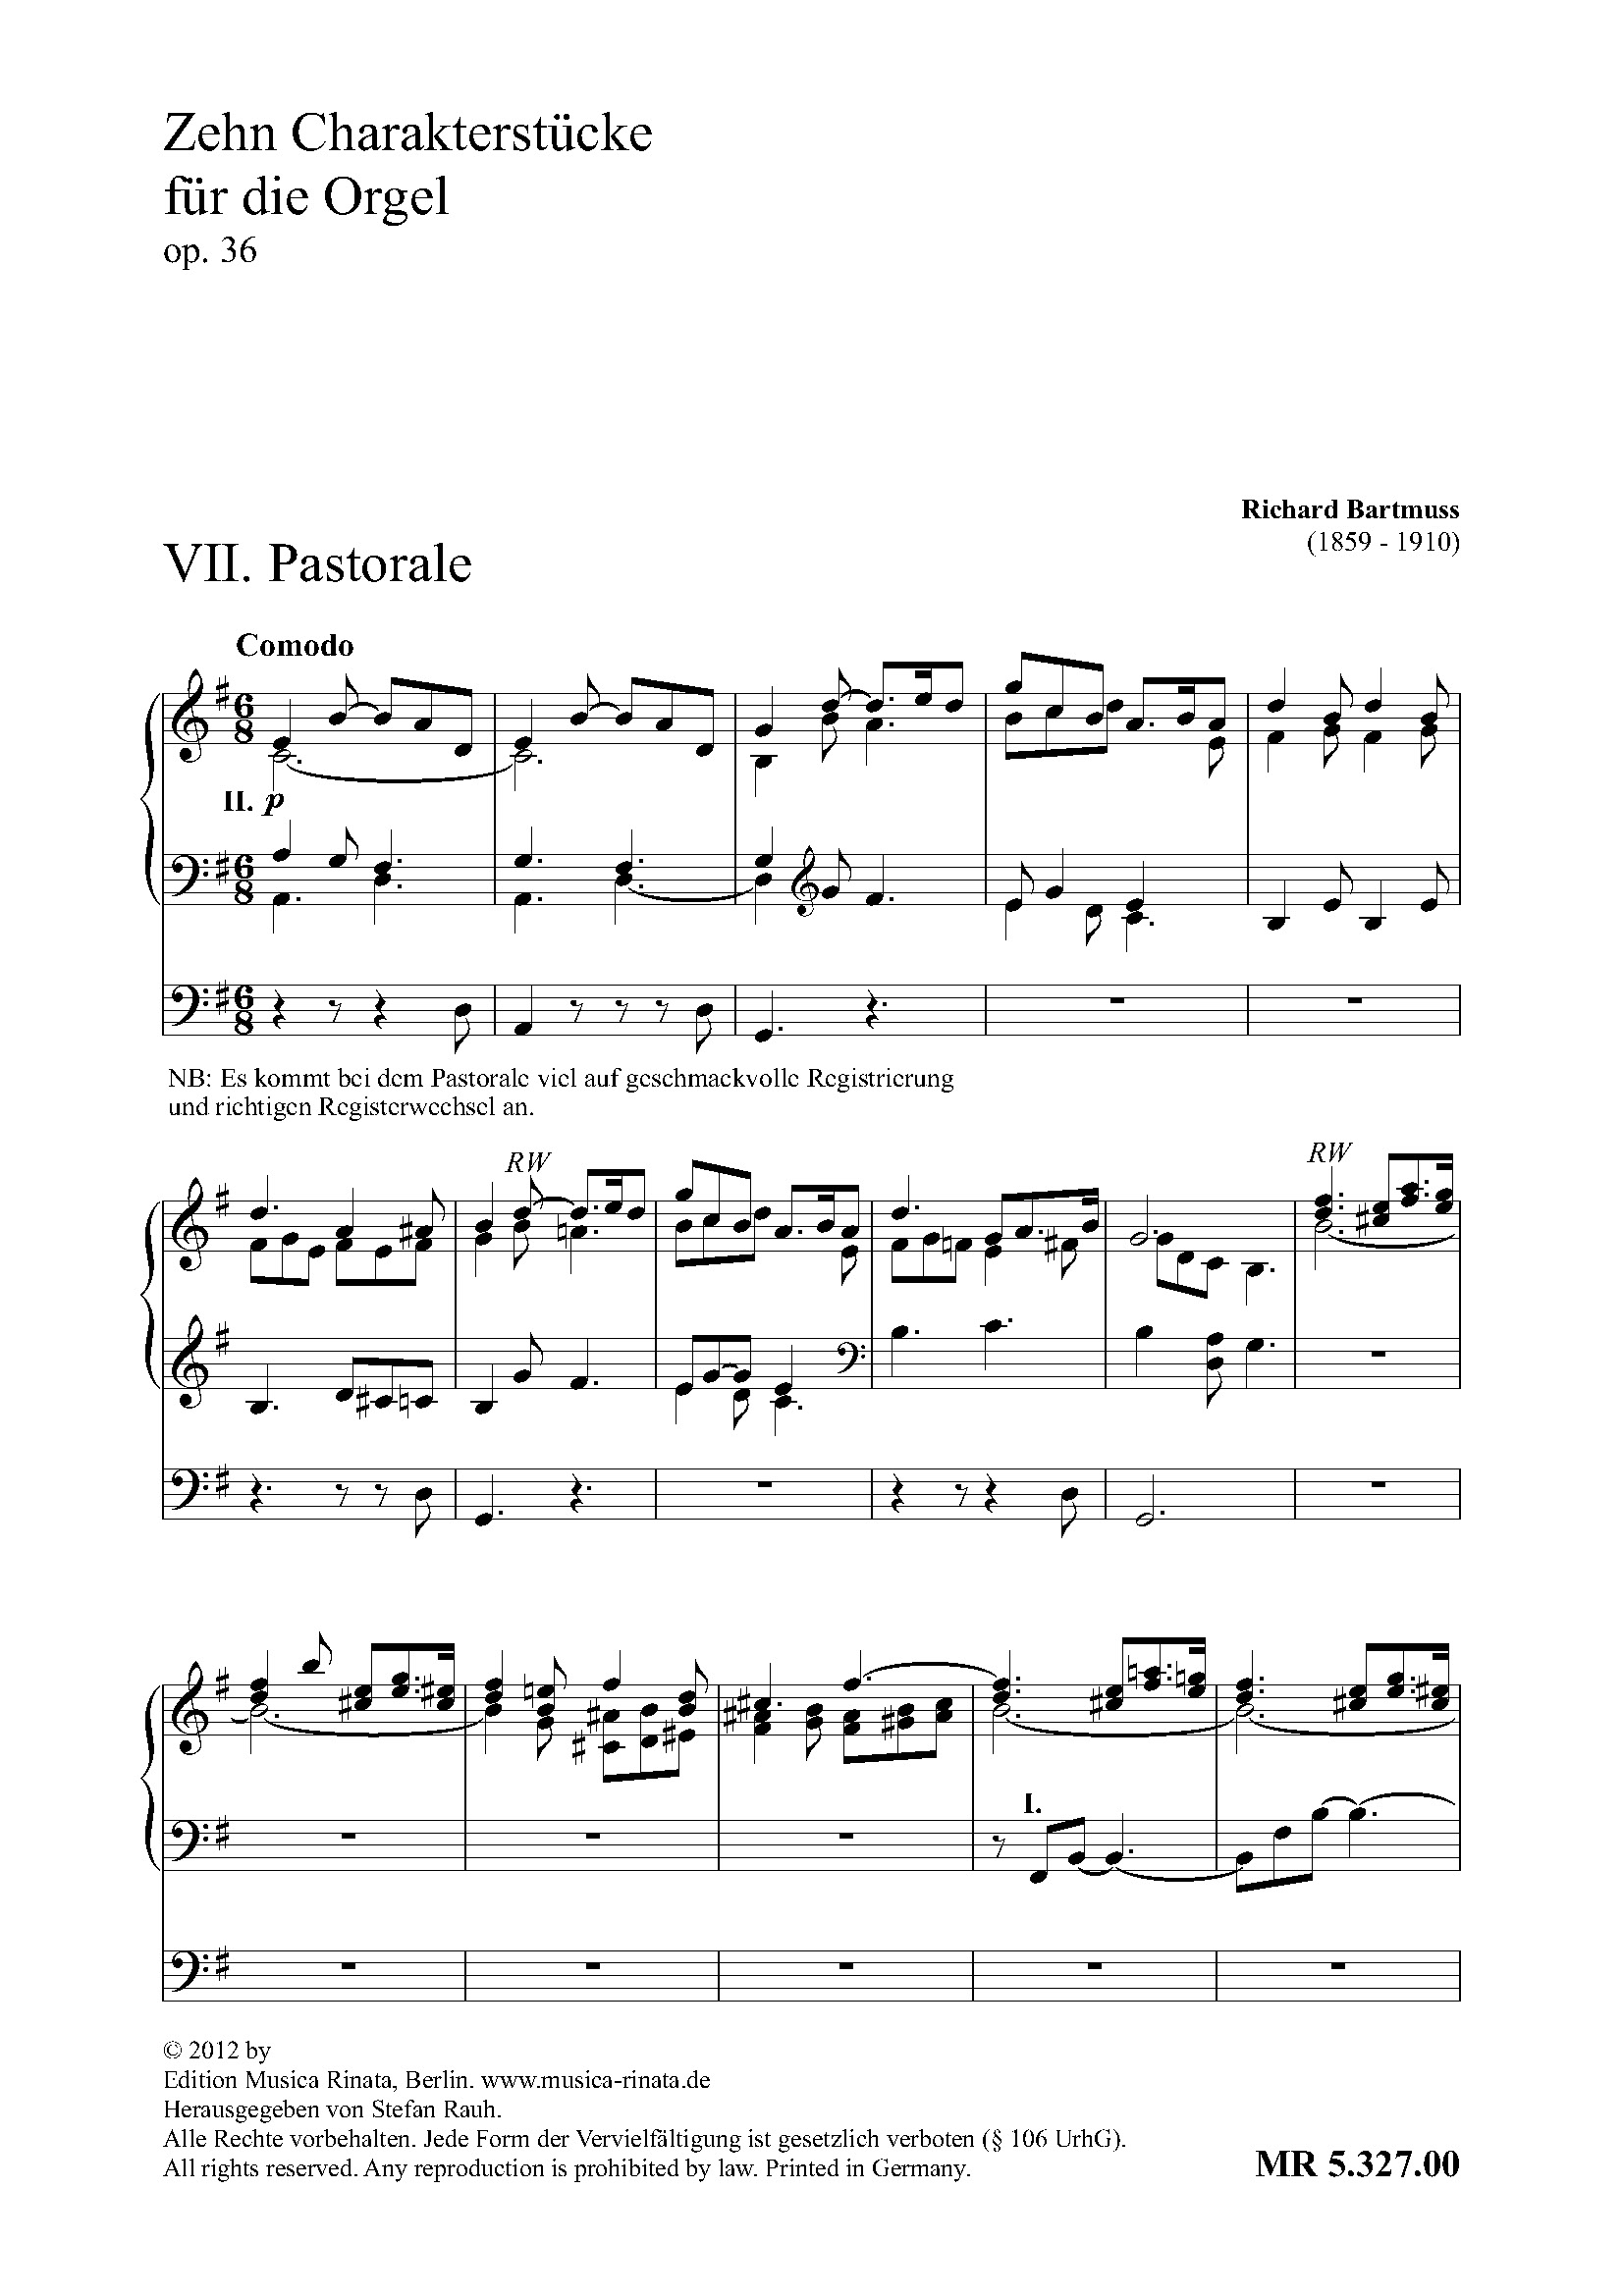 Zehn Charakterstücke für die Orgel Bd III